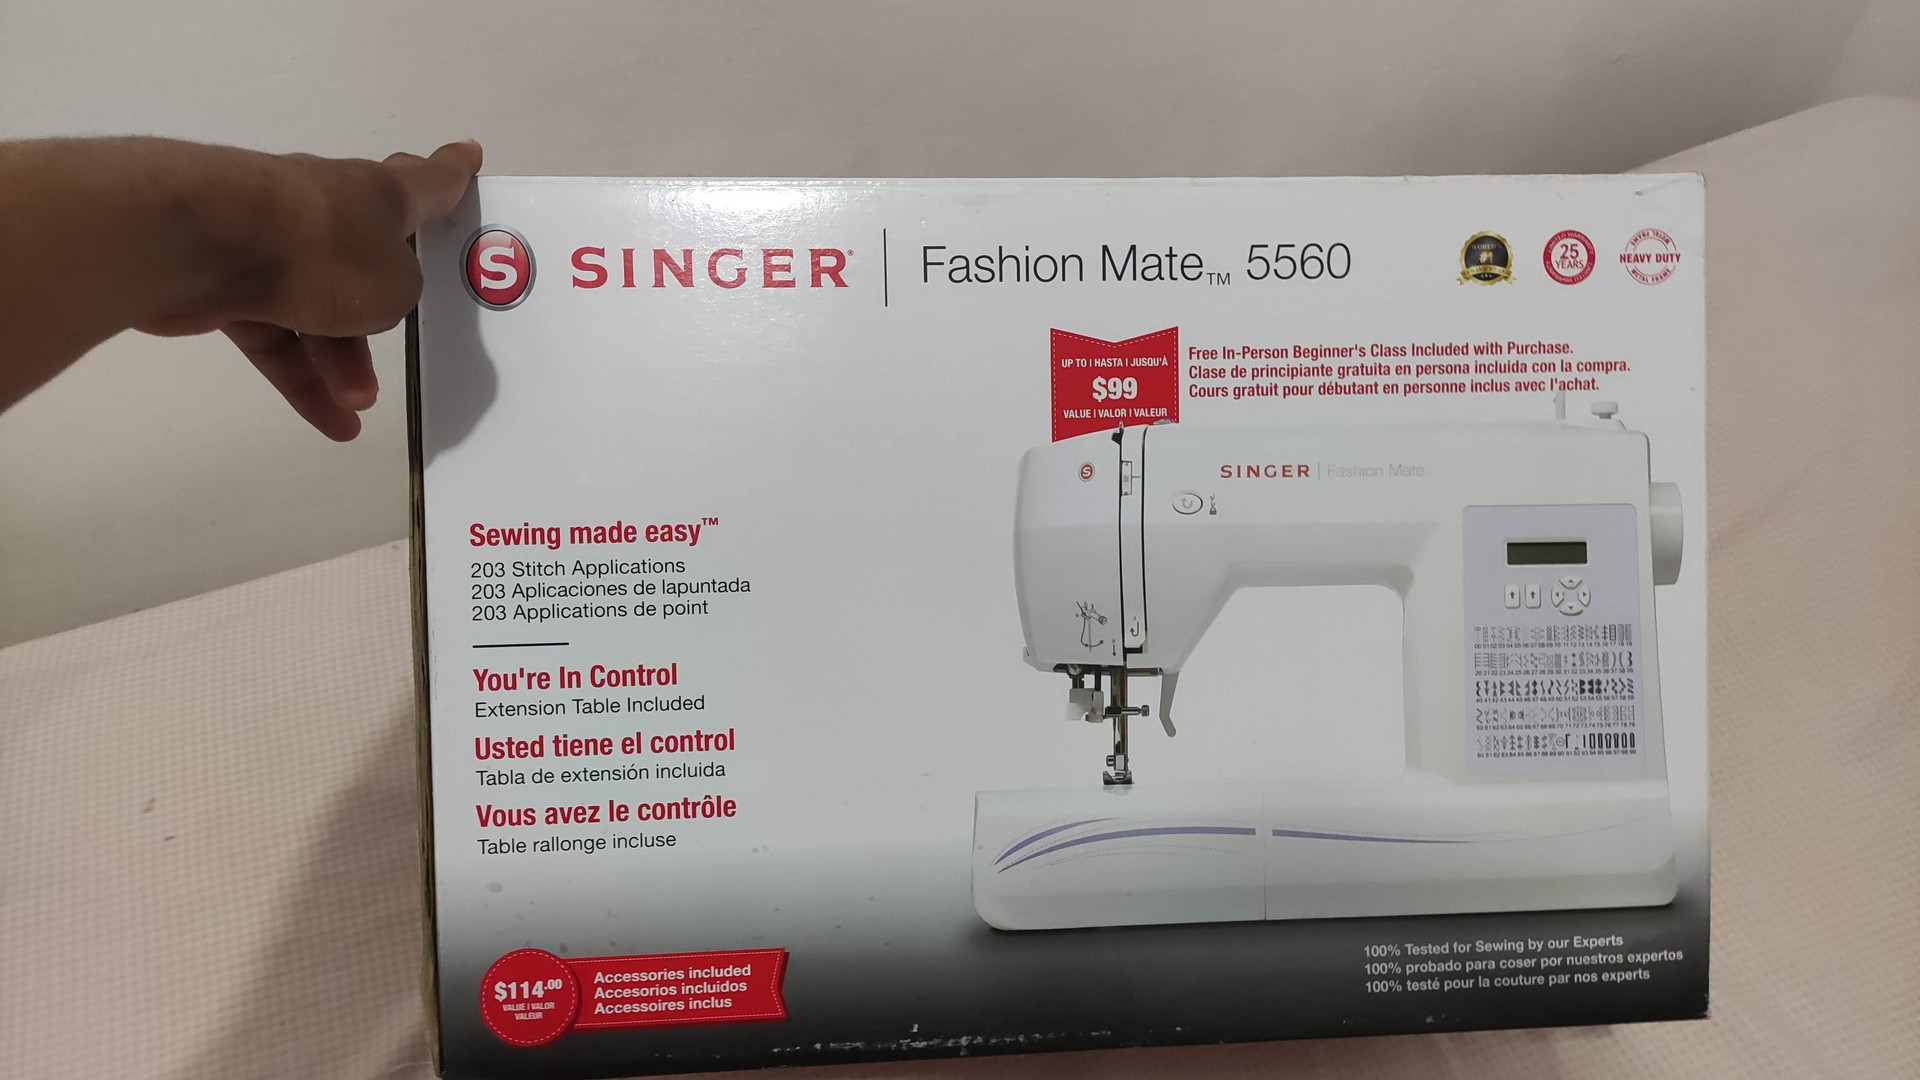 herramientas, jardines y exterior - Máquina de coser - Singer Fashion Mate 5560